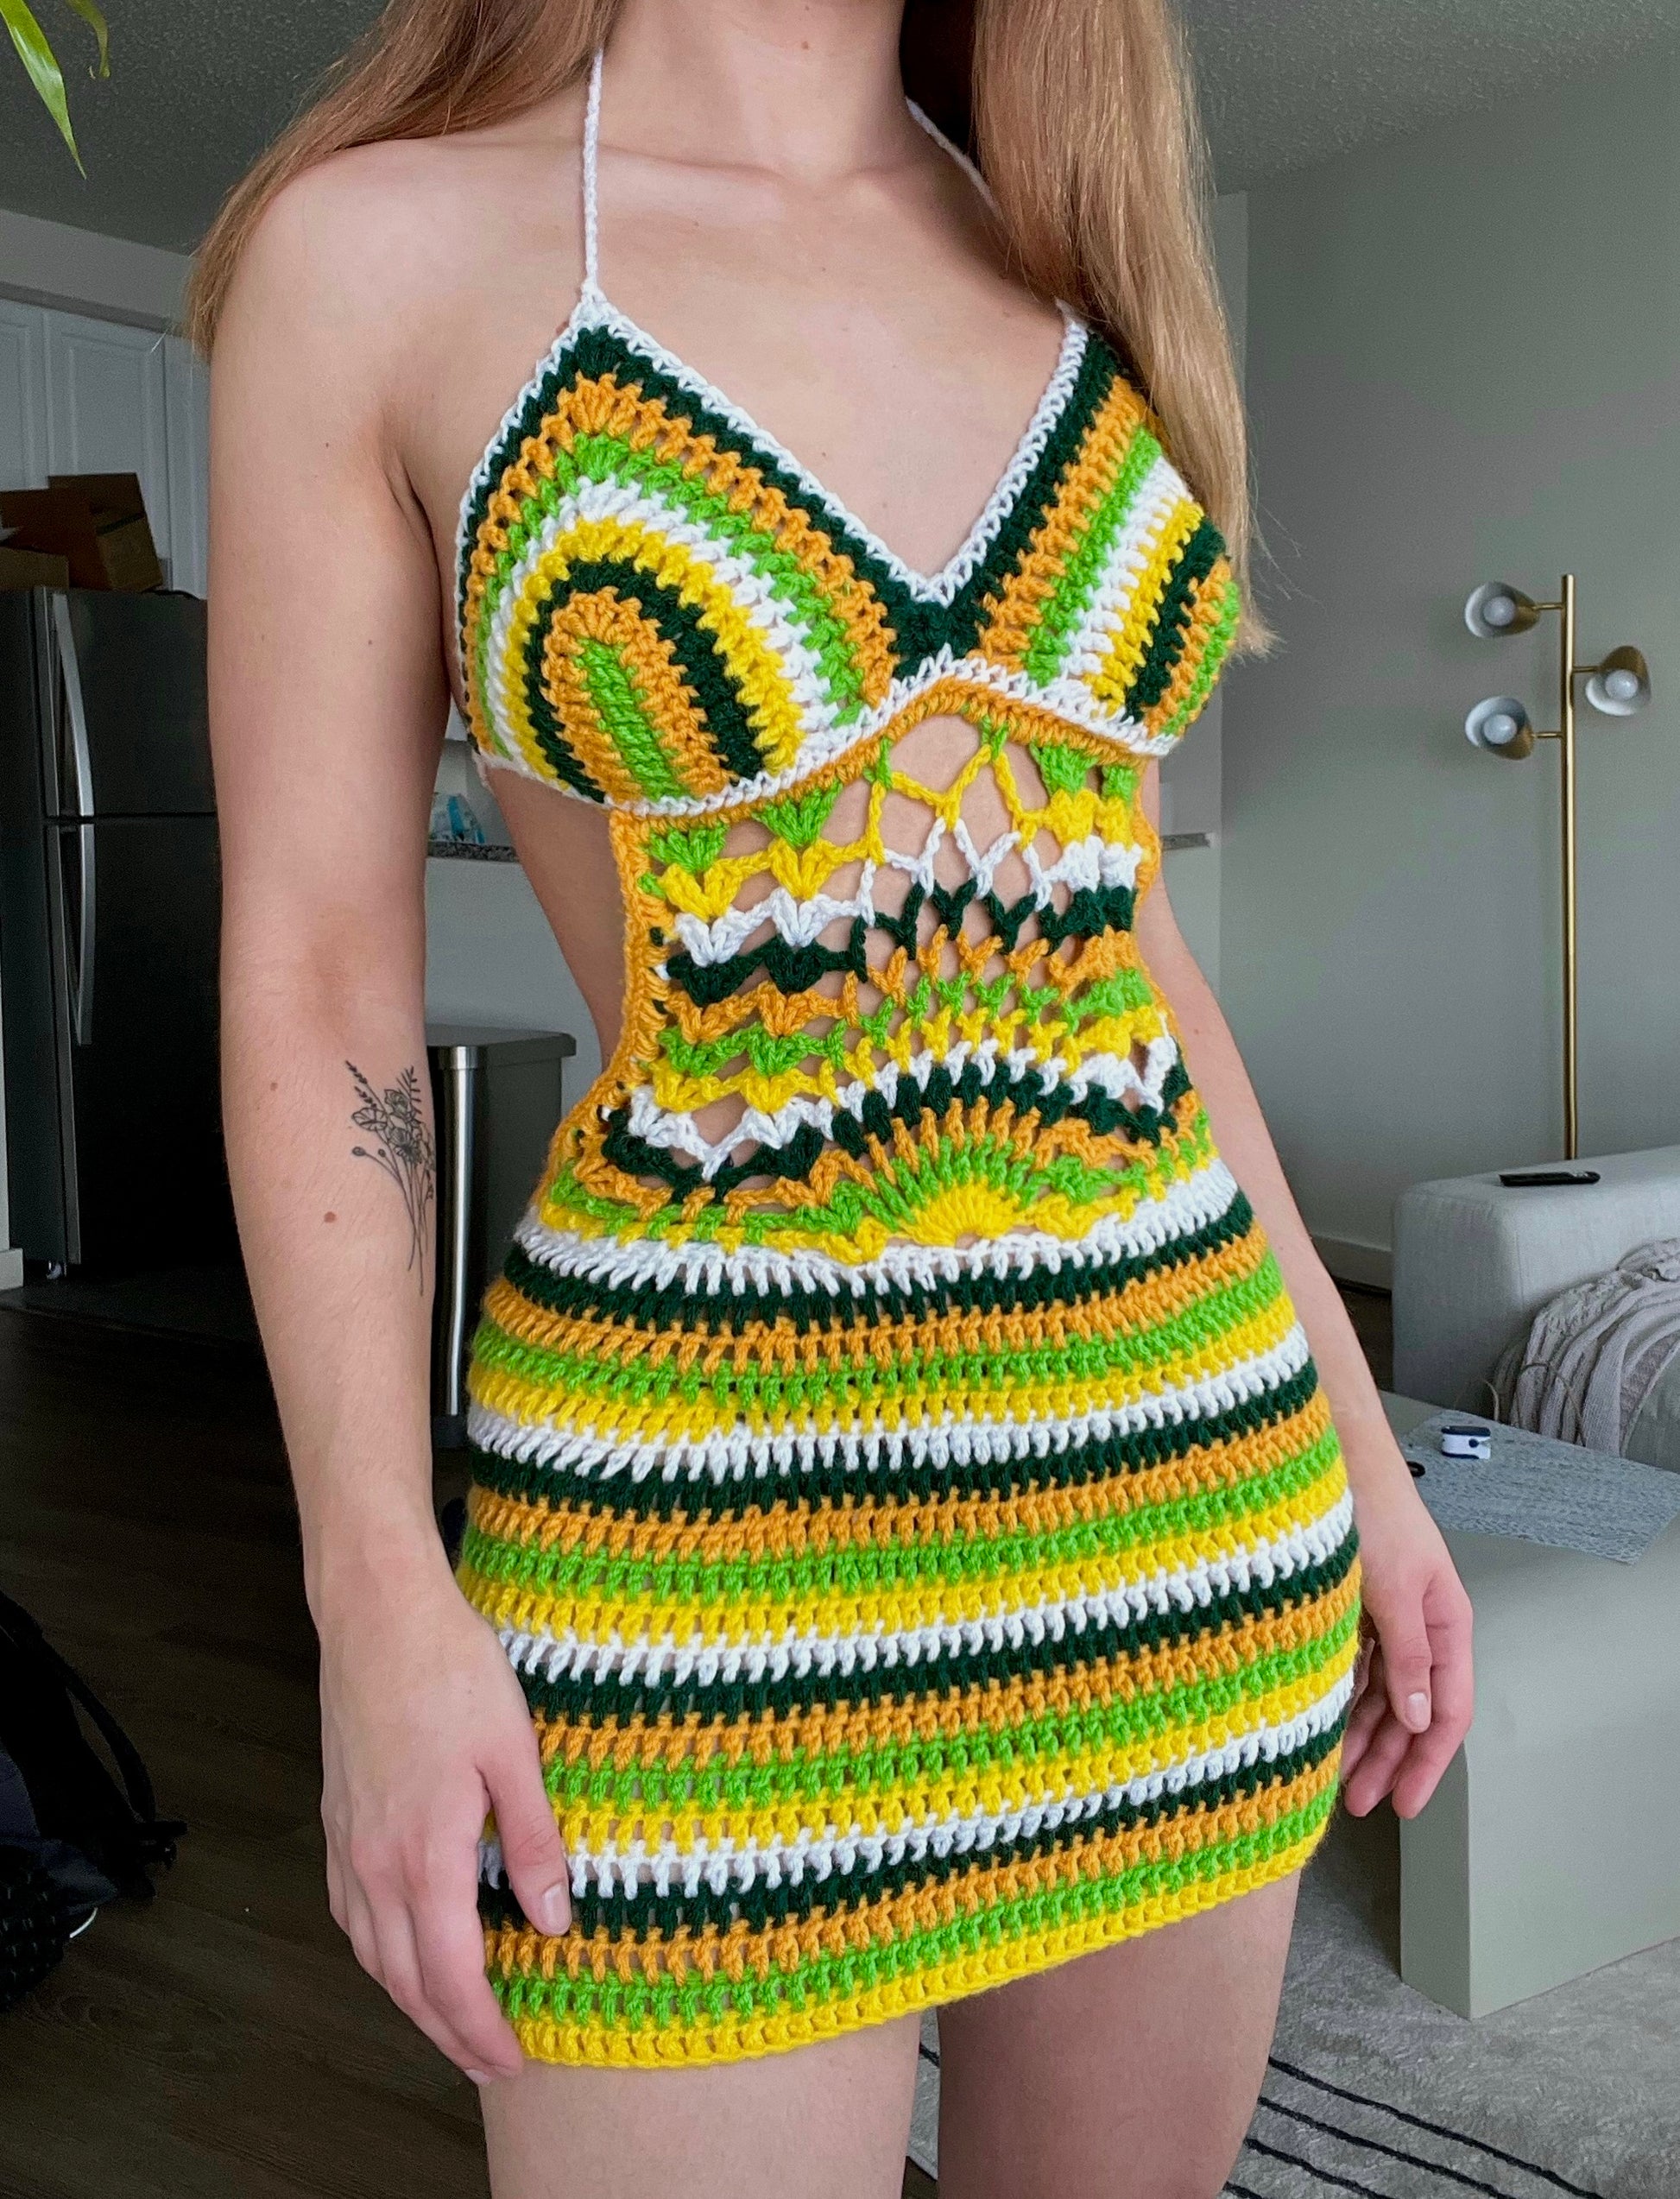 Palma Dress Crochet Pattern – The Crocheting